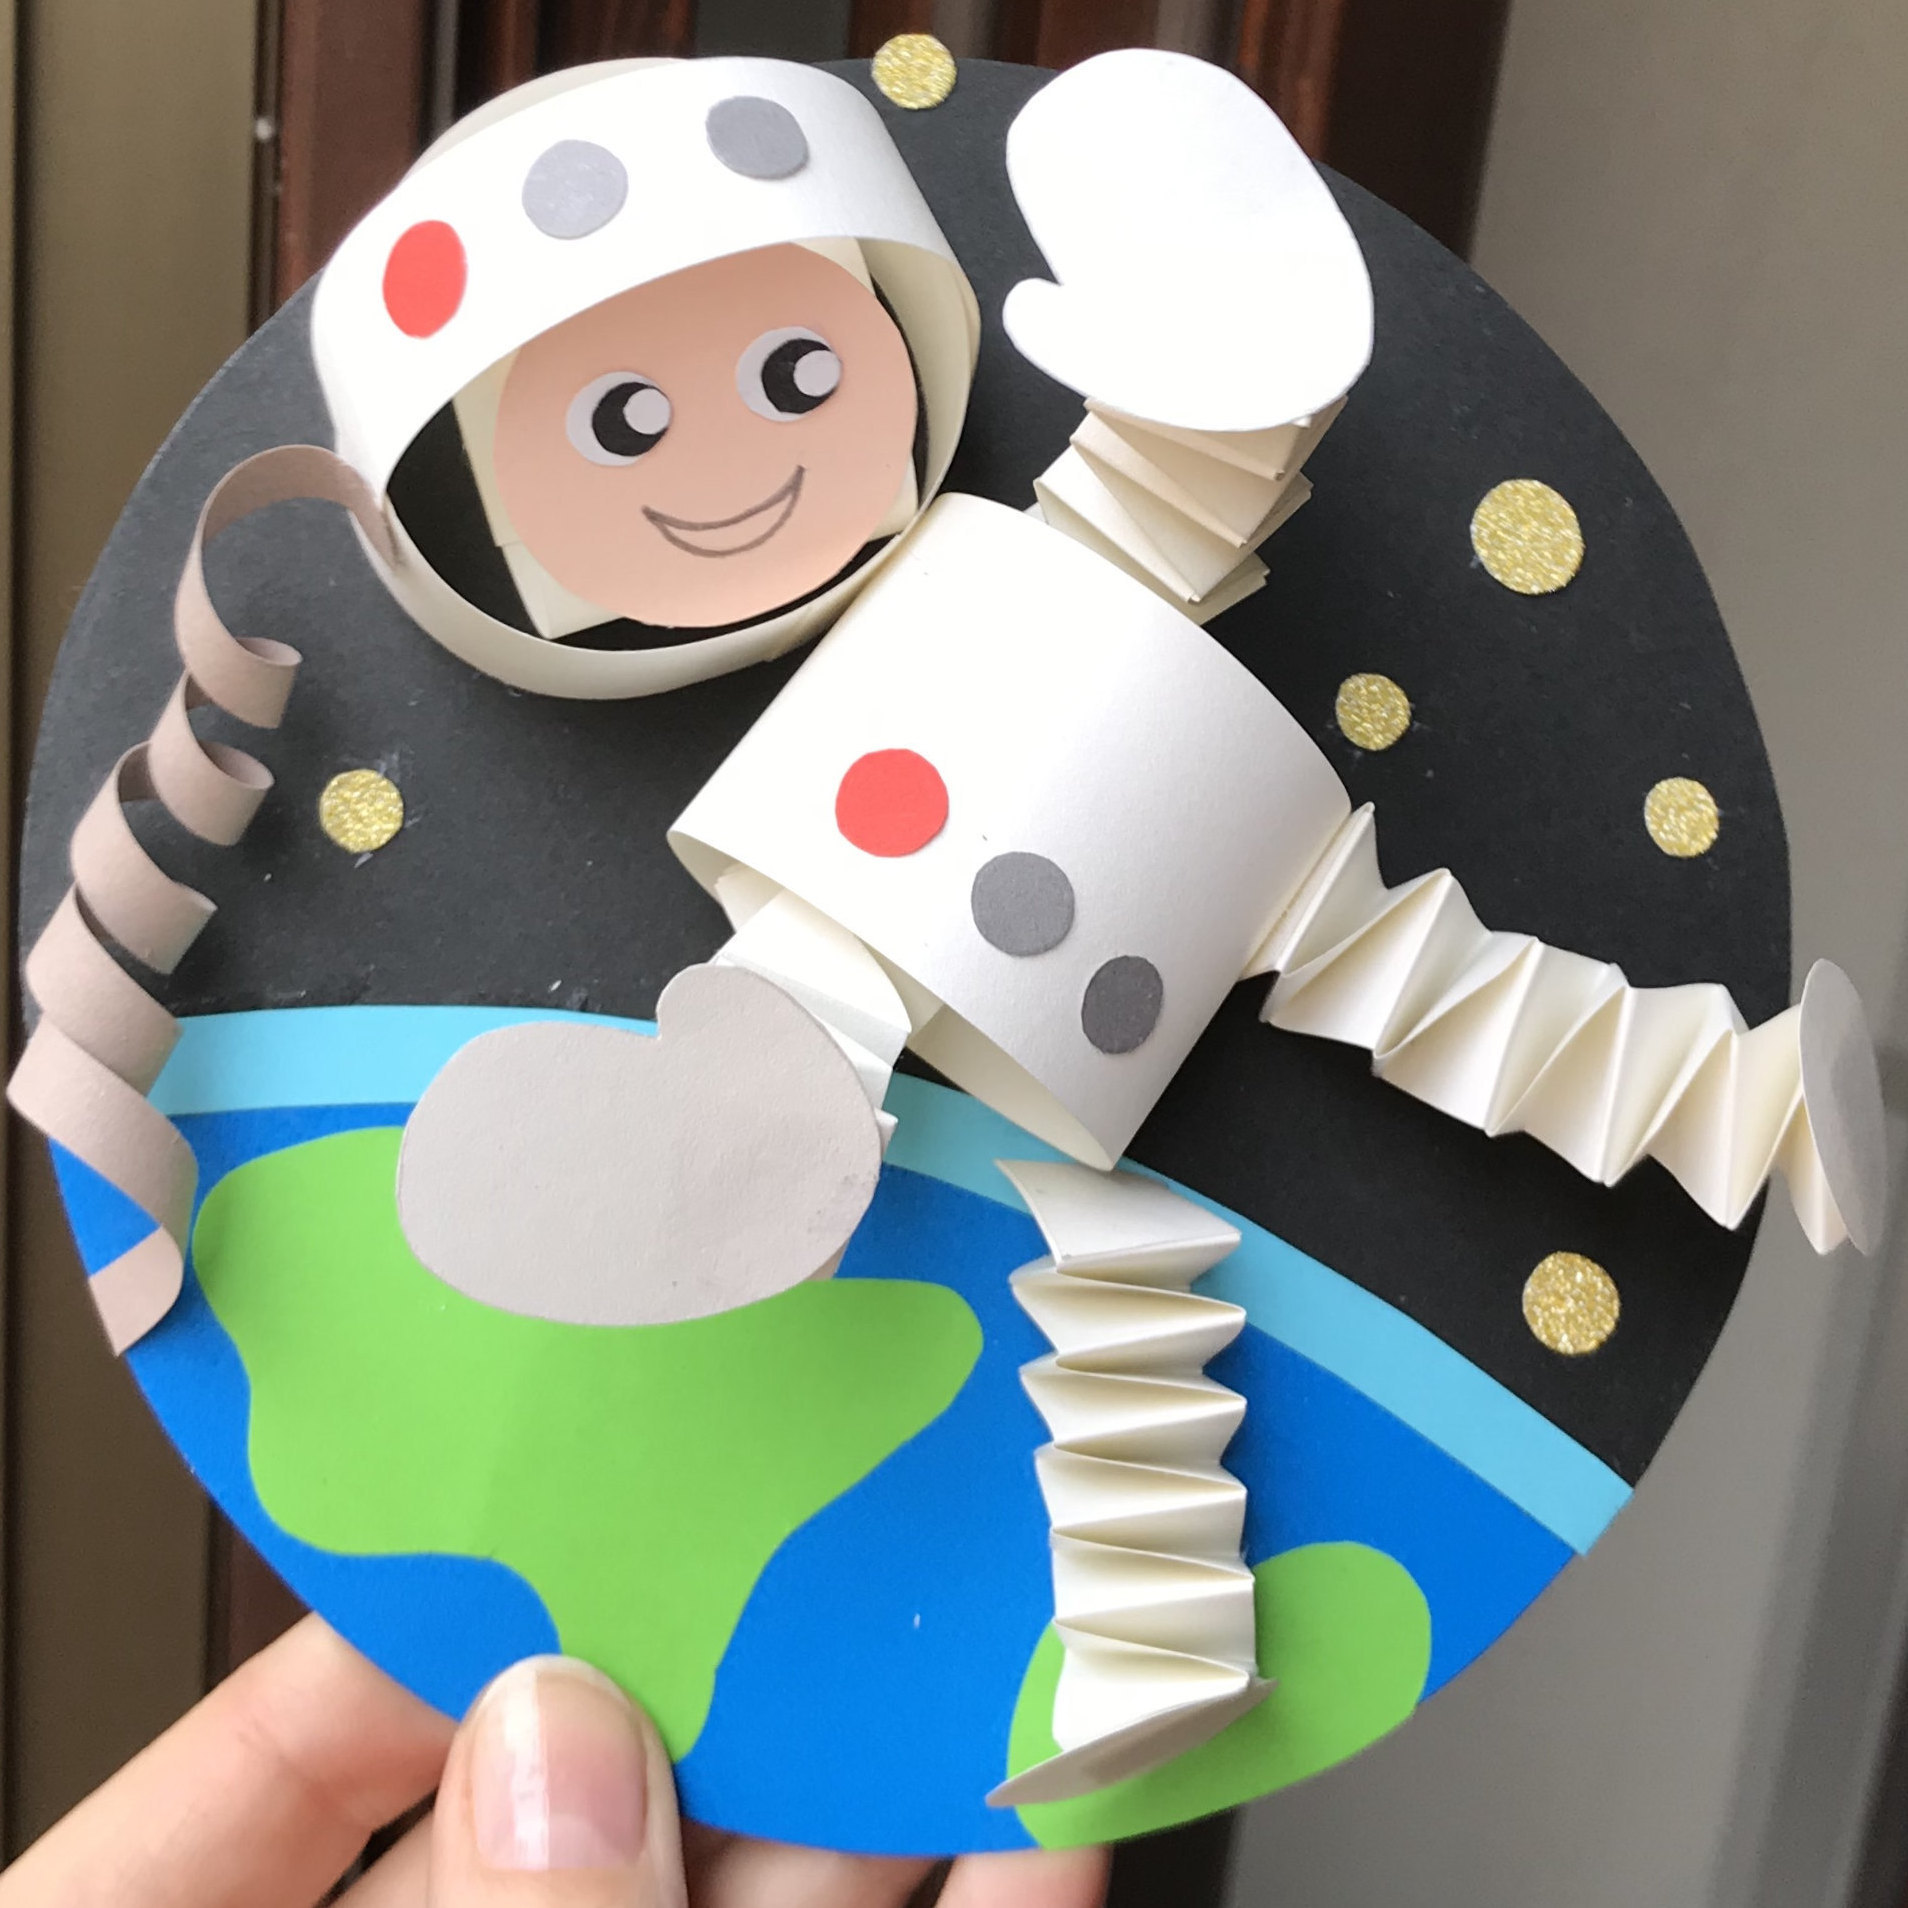 День космонавтики: космические поделки и материалы по астрономии для детей. Большой обзор!